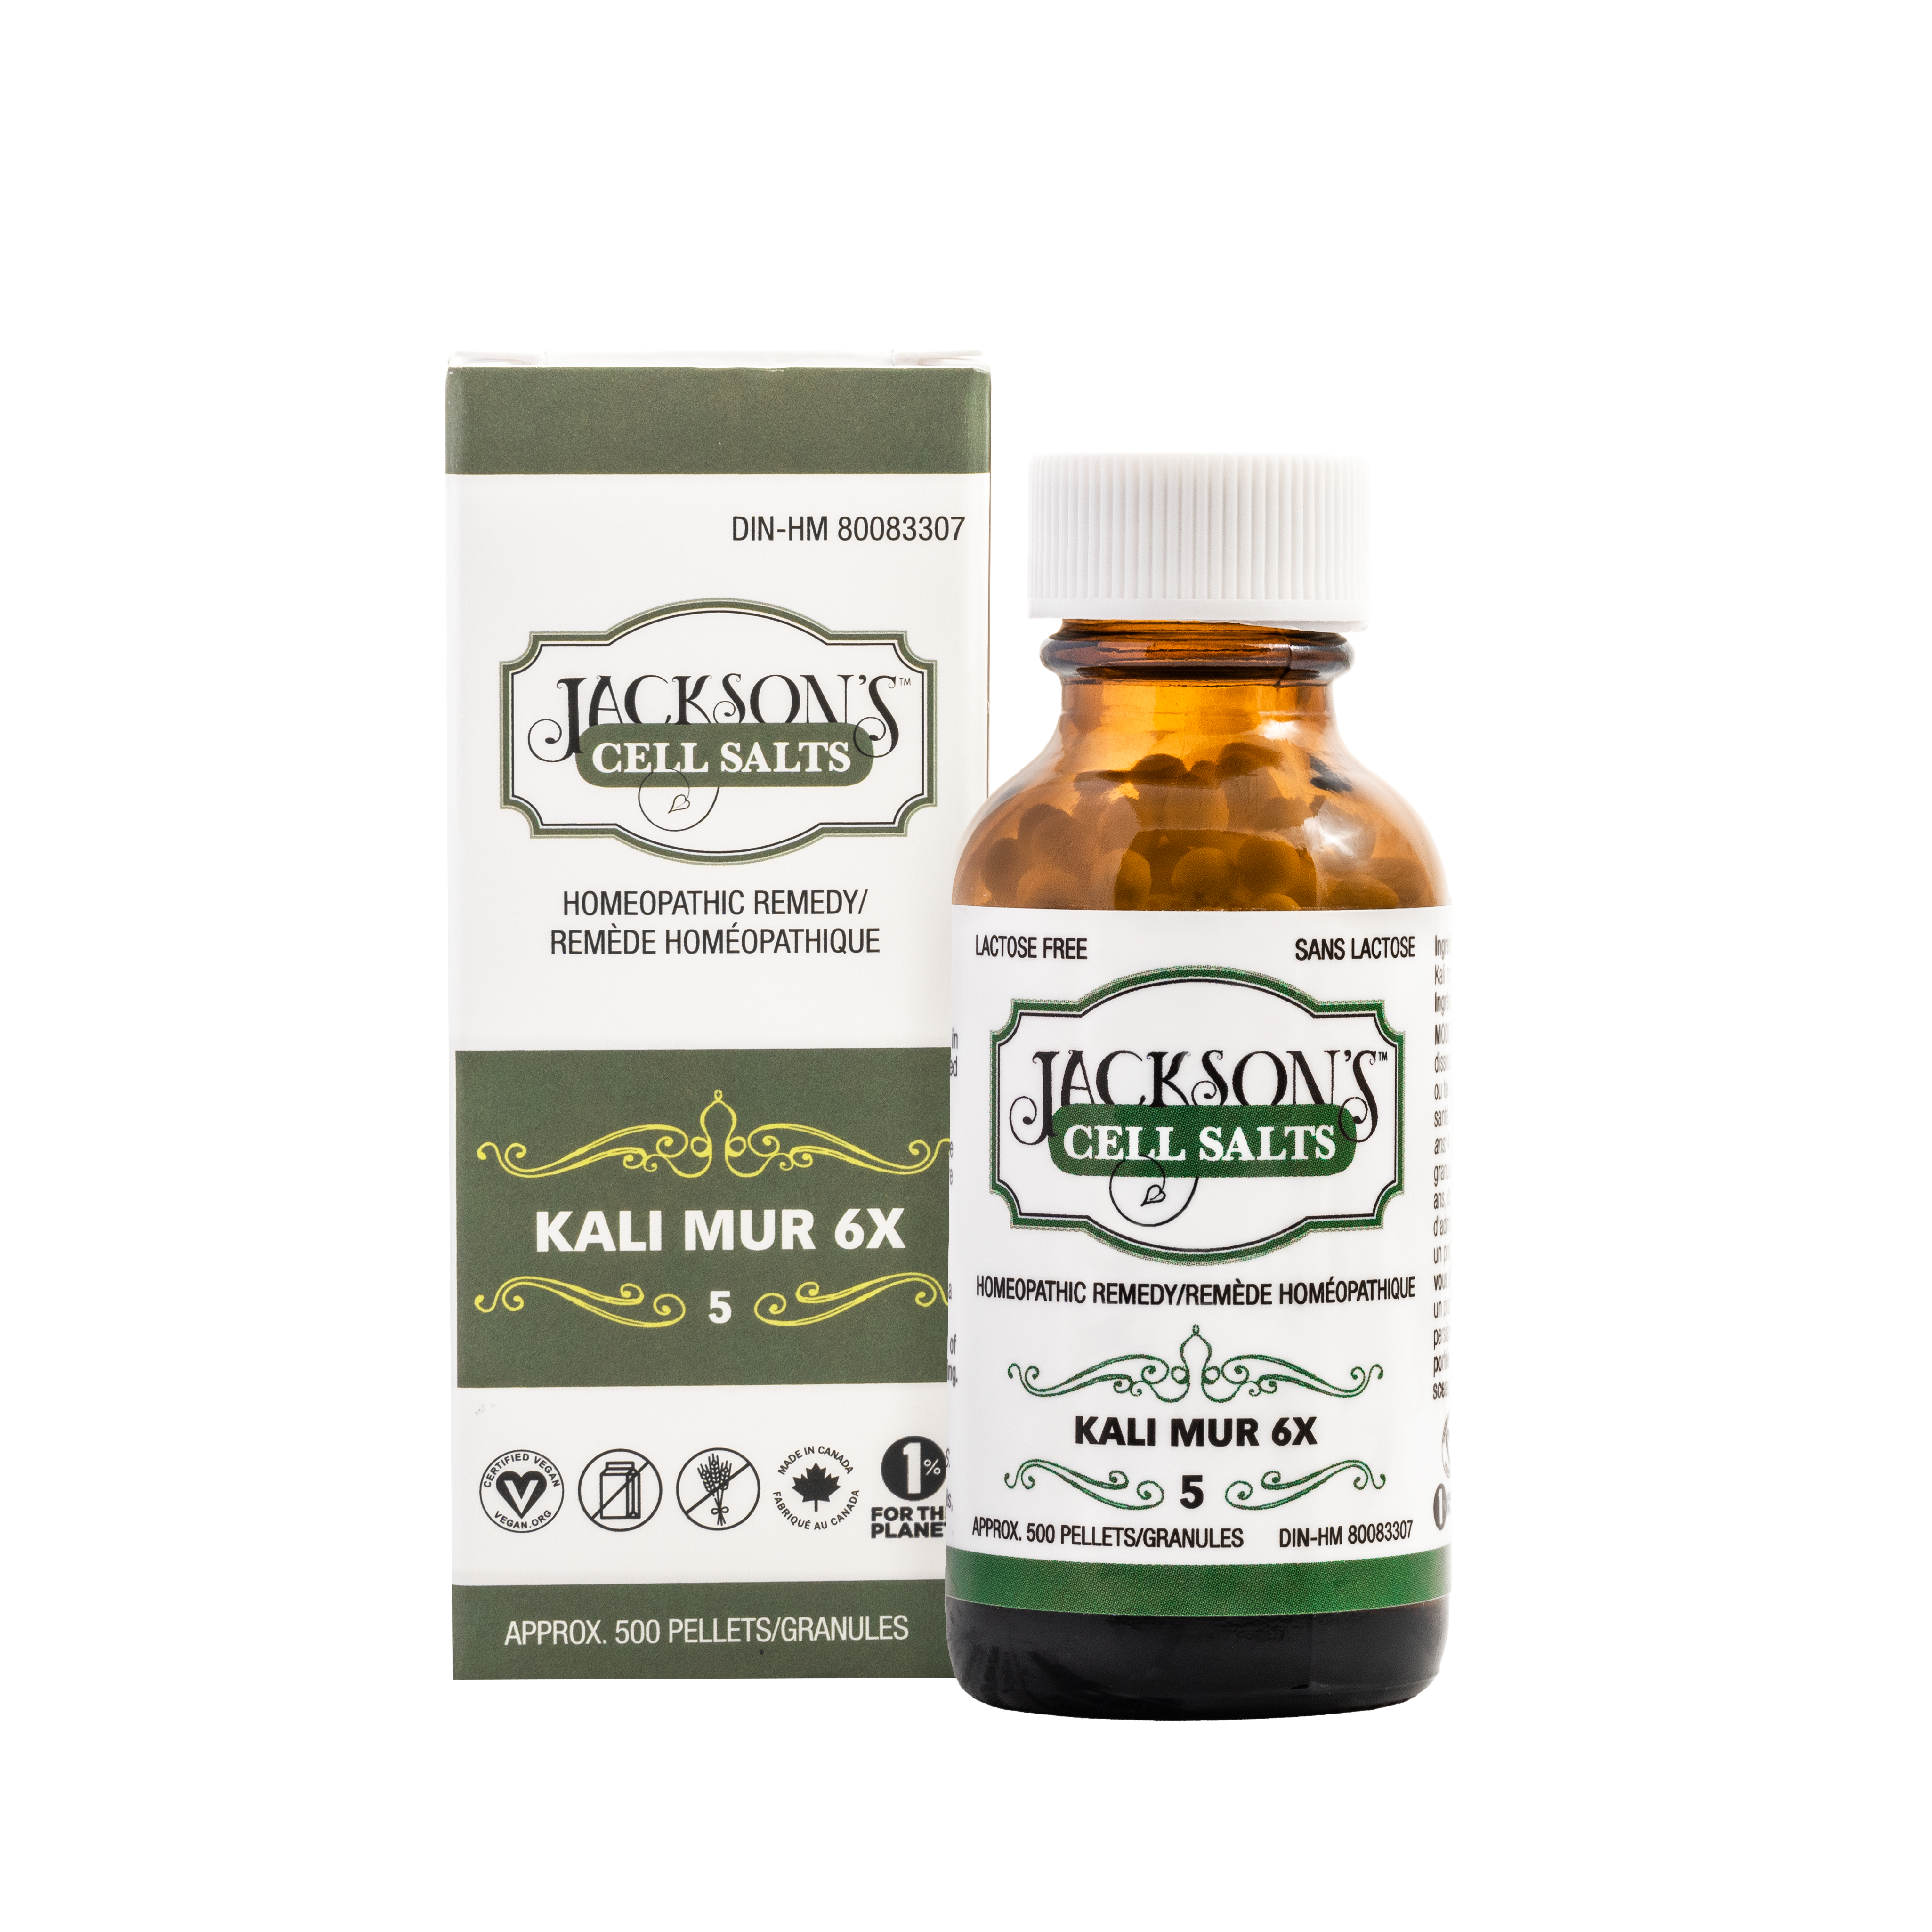 #5 Kali mur 6X (Potassium chloride) - The First Certified Vegan, Lactose-Free Schuessler Cell (Tissue) Salt